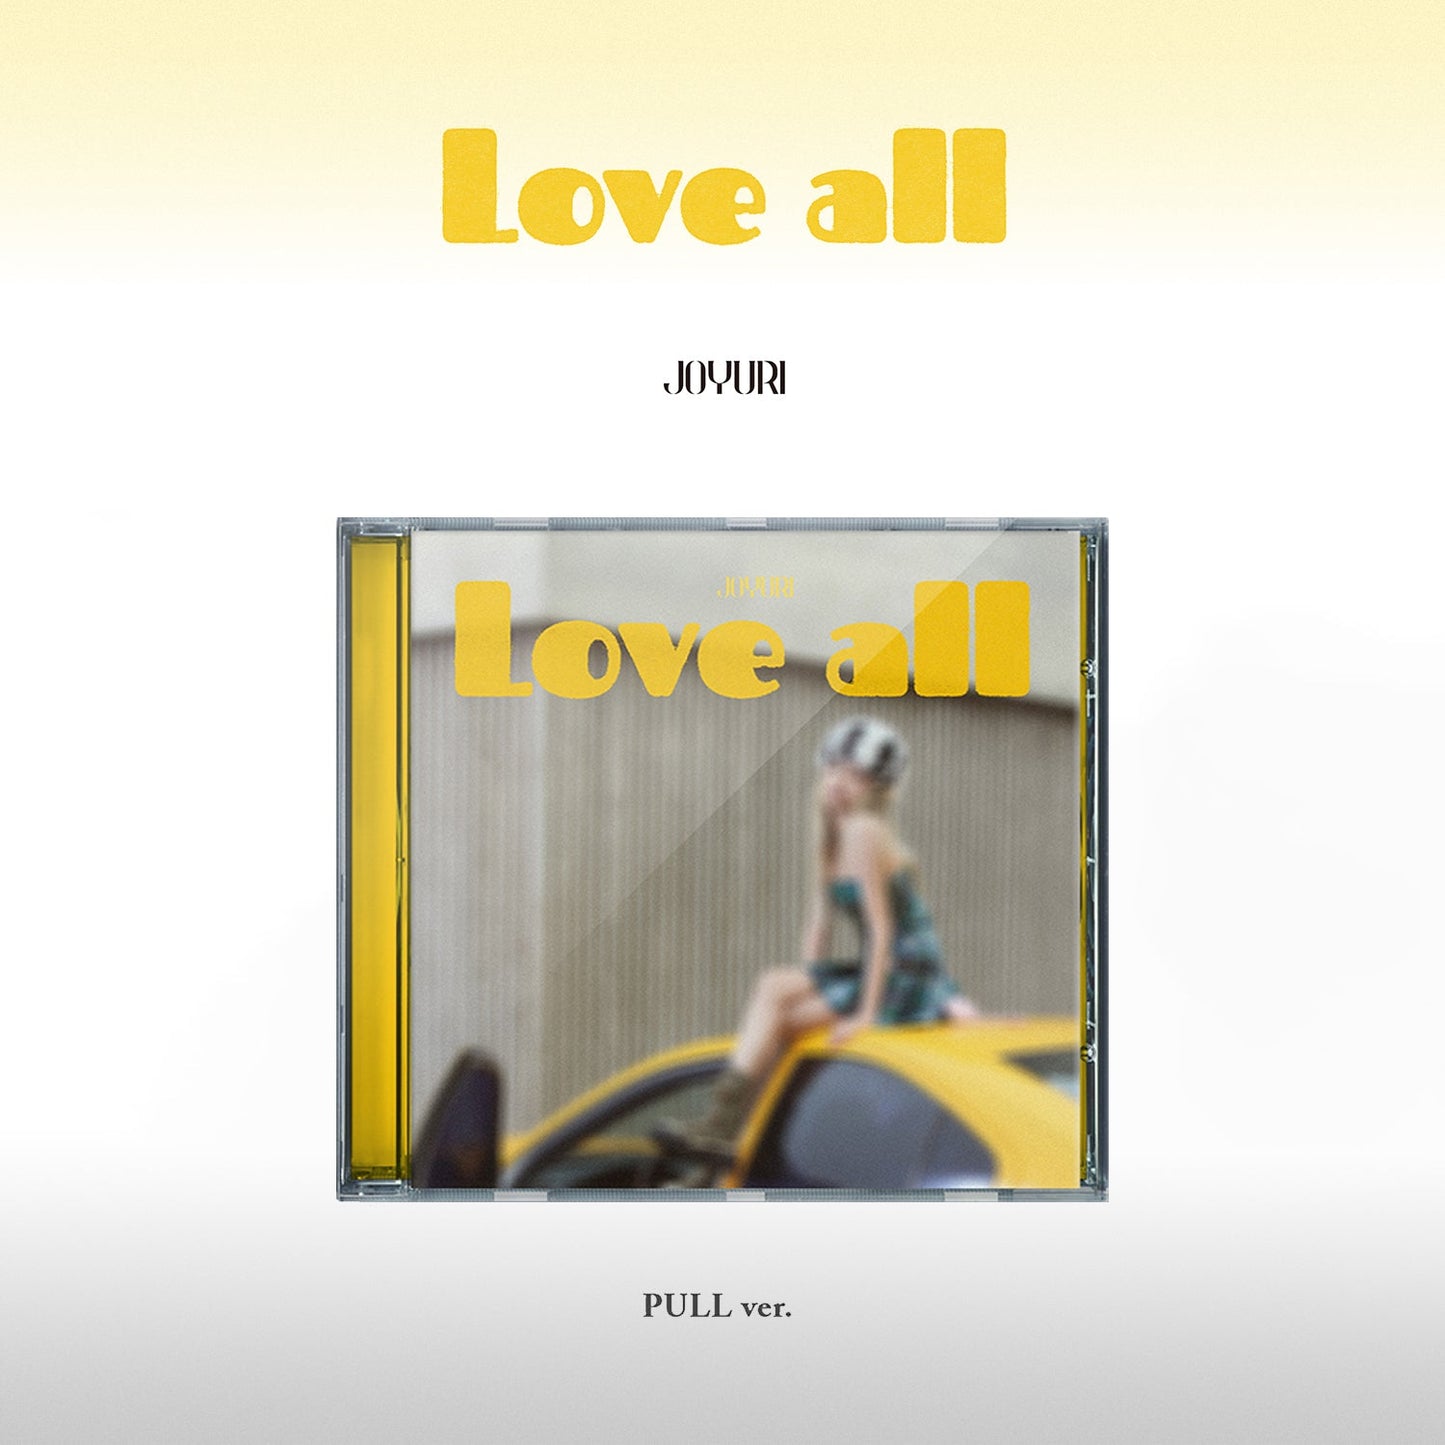 JO YURI 2ND MINI ALBUM 'LOVE ALL' (JEWEL) PULL VERSION COVER